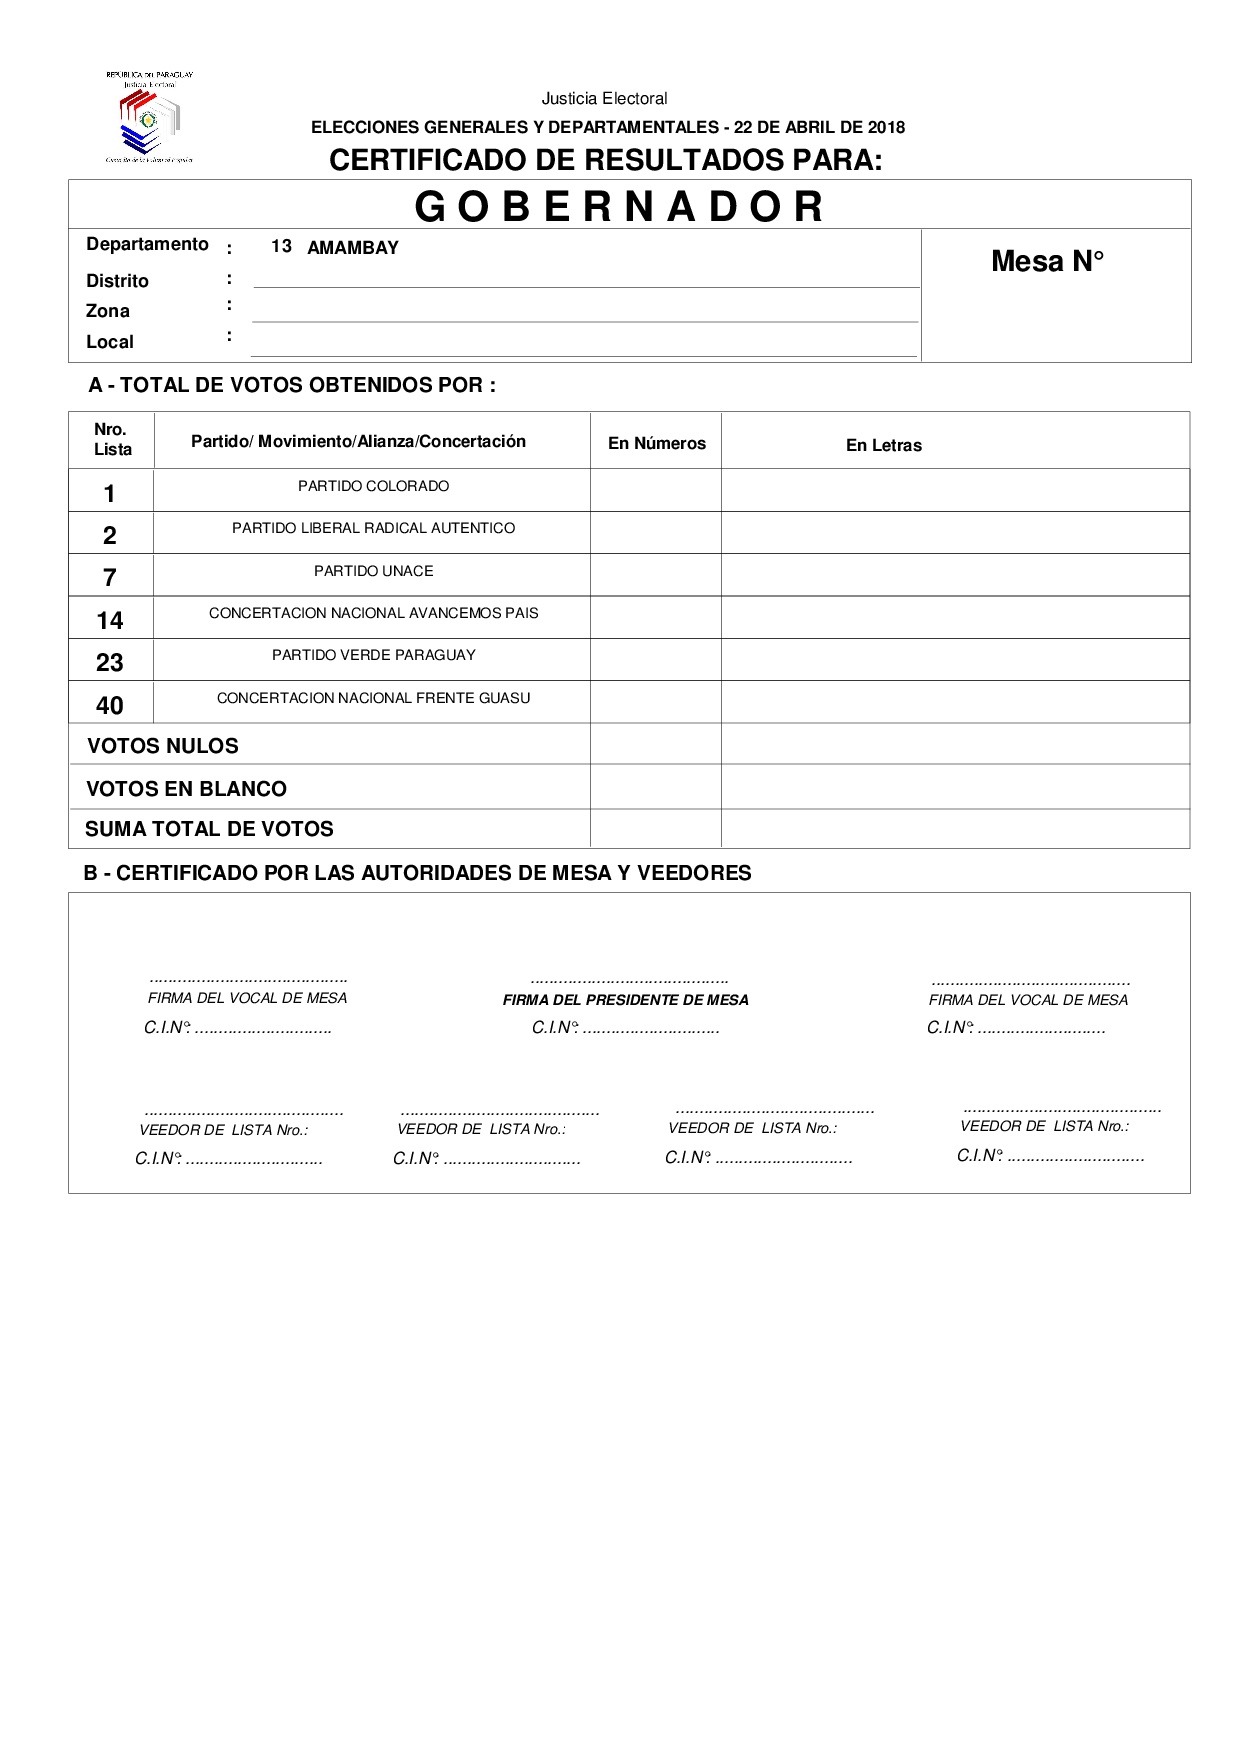 Certificado de Resultados Para GOBERNADOR de AMAMBAY